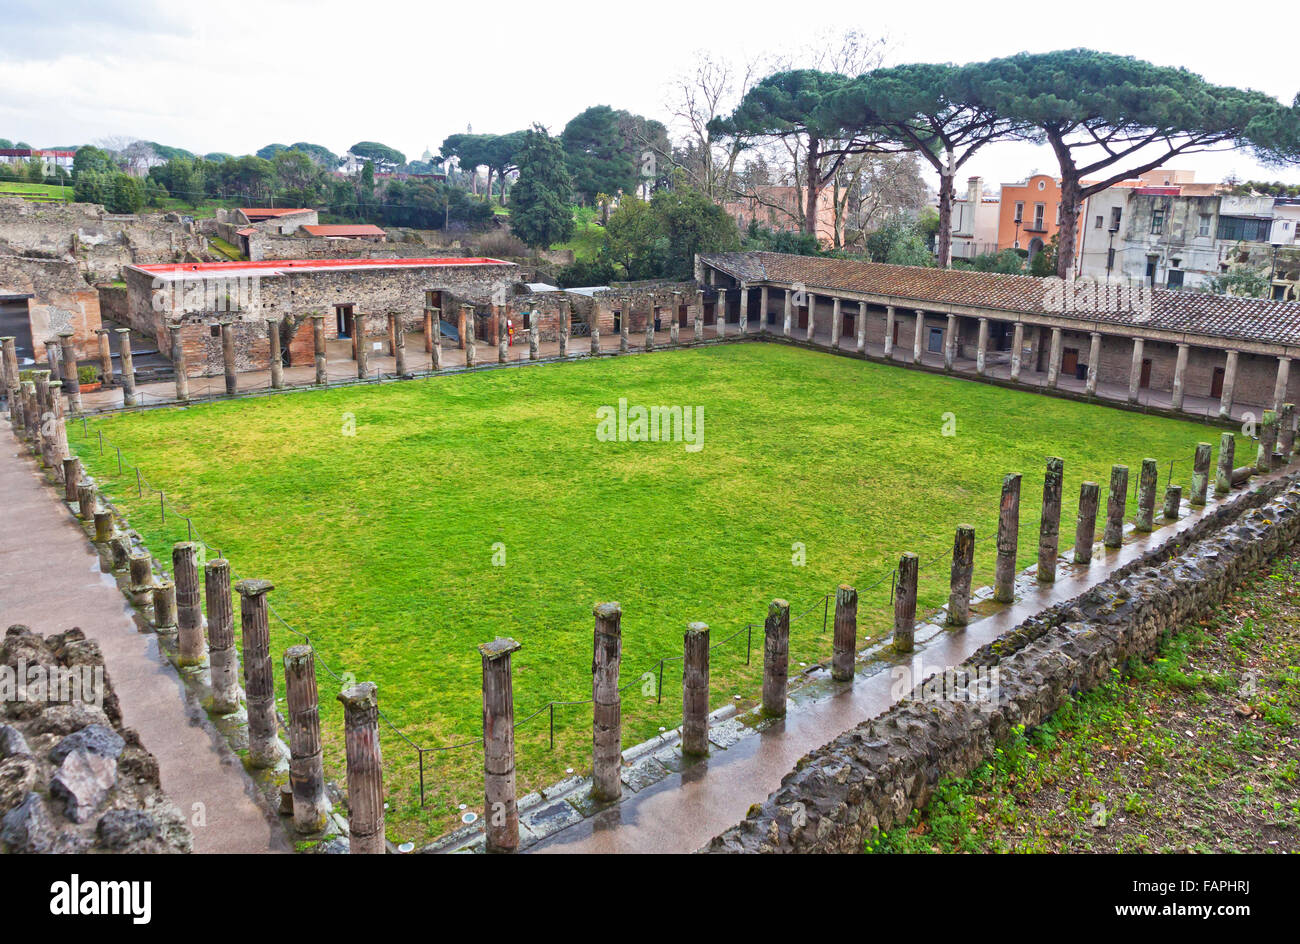 Die Ruinen der antiken römischen Stadt Pompeji, Italien. Pompeji wurde zerstört und begraben mit Asche nach Vesuv-Ausbruch im Jahr 79 n. Chr. Stockfoto